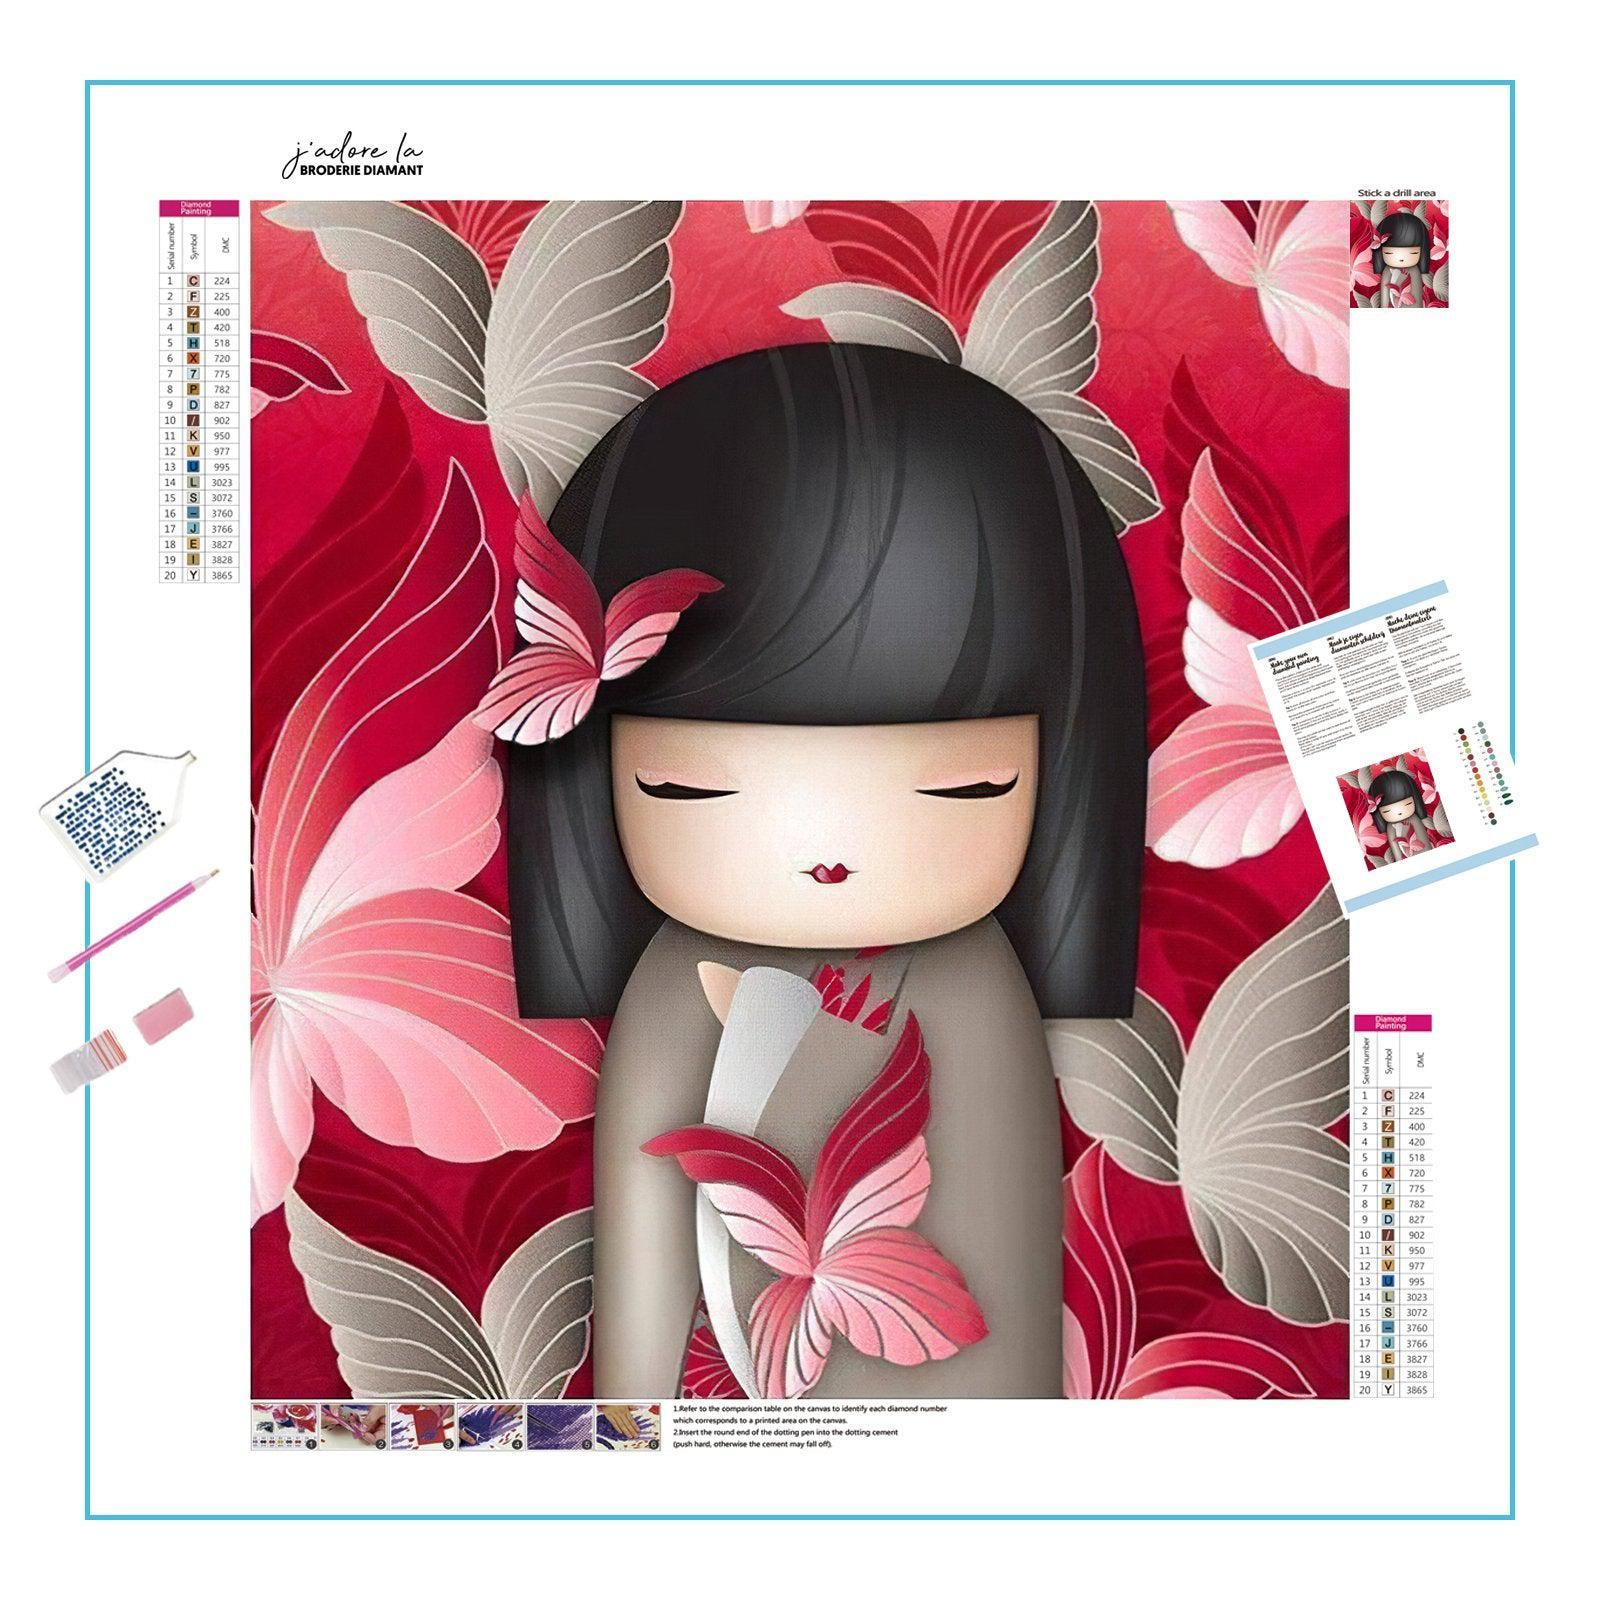 Adorable Girl: Sweet and charming, perfect for nursery decor.Adorable Girl - Diamondartlove